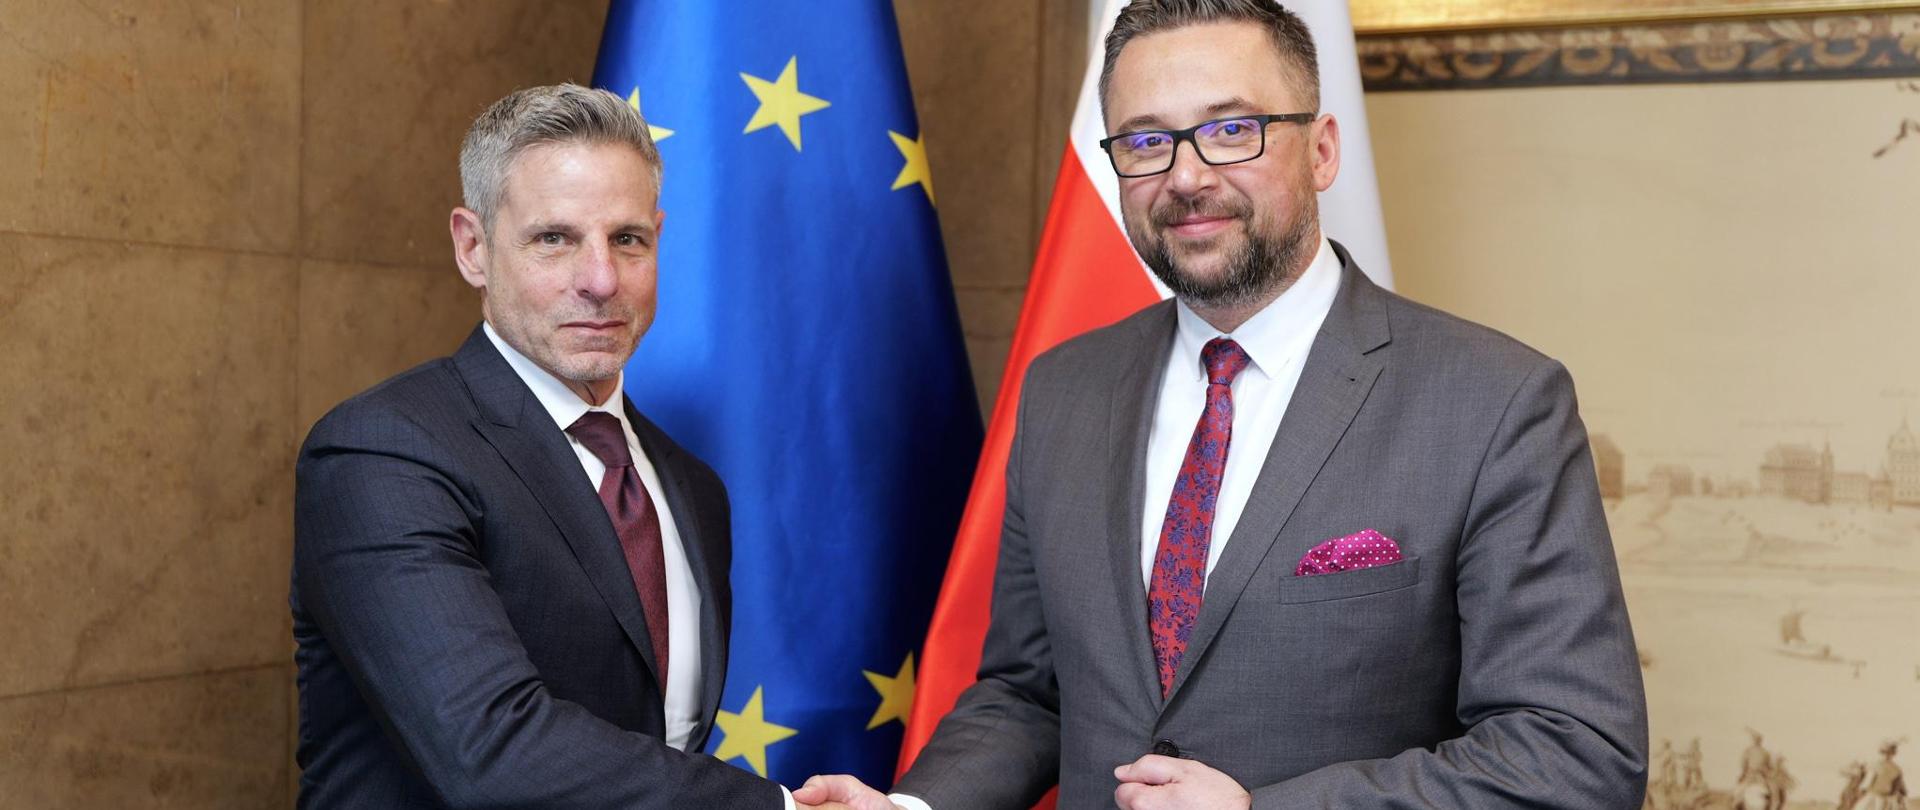 Dwóch mężczyzn podczas uścisku dłoni. Obaj ubrani w garnitury. W tle flaga UE i PL